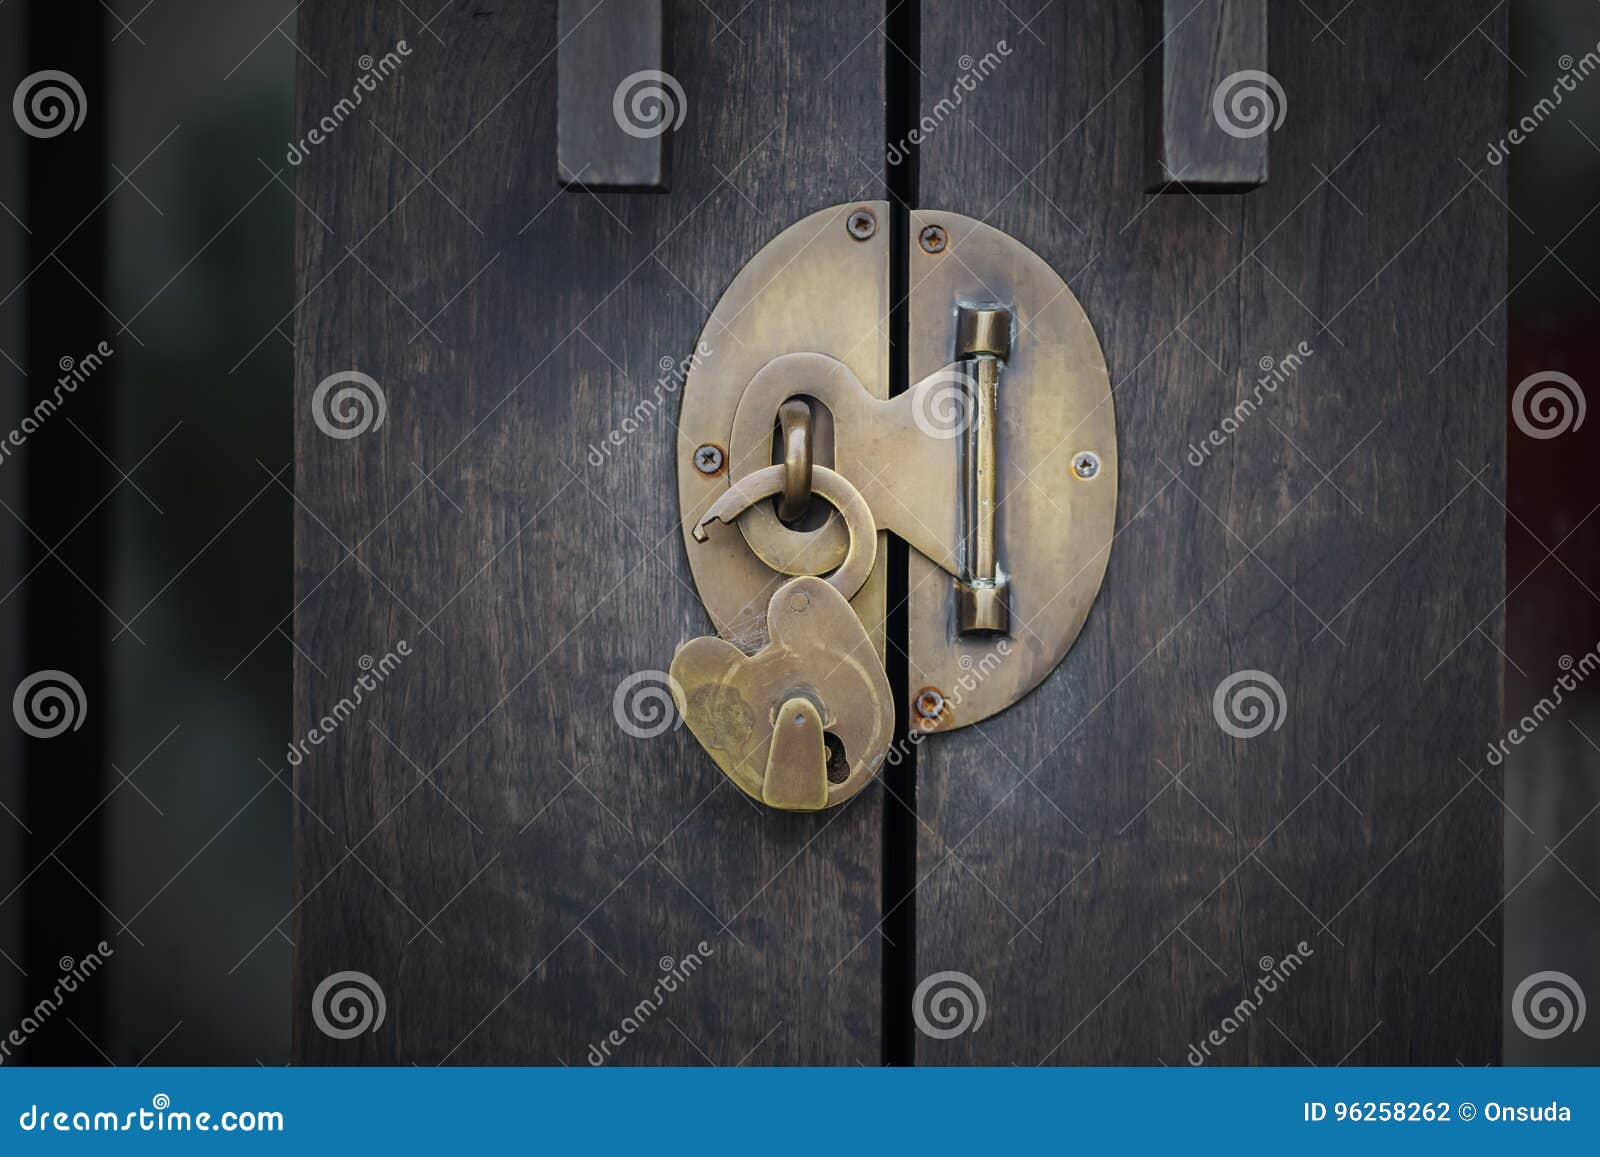 unlock wood door